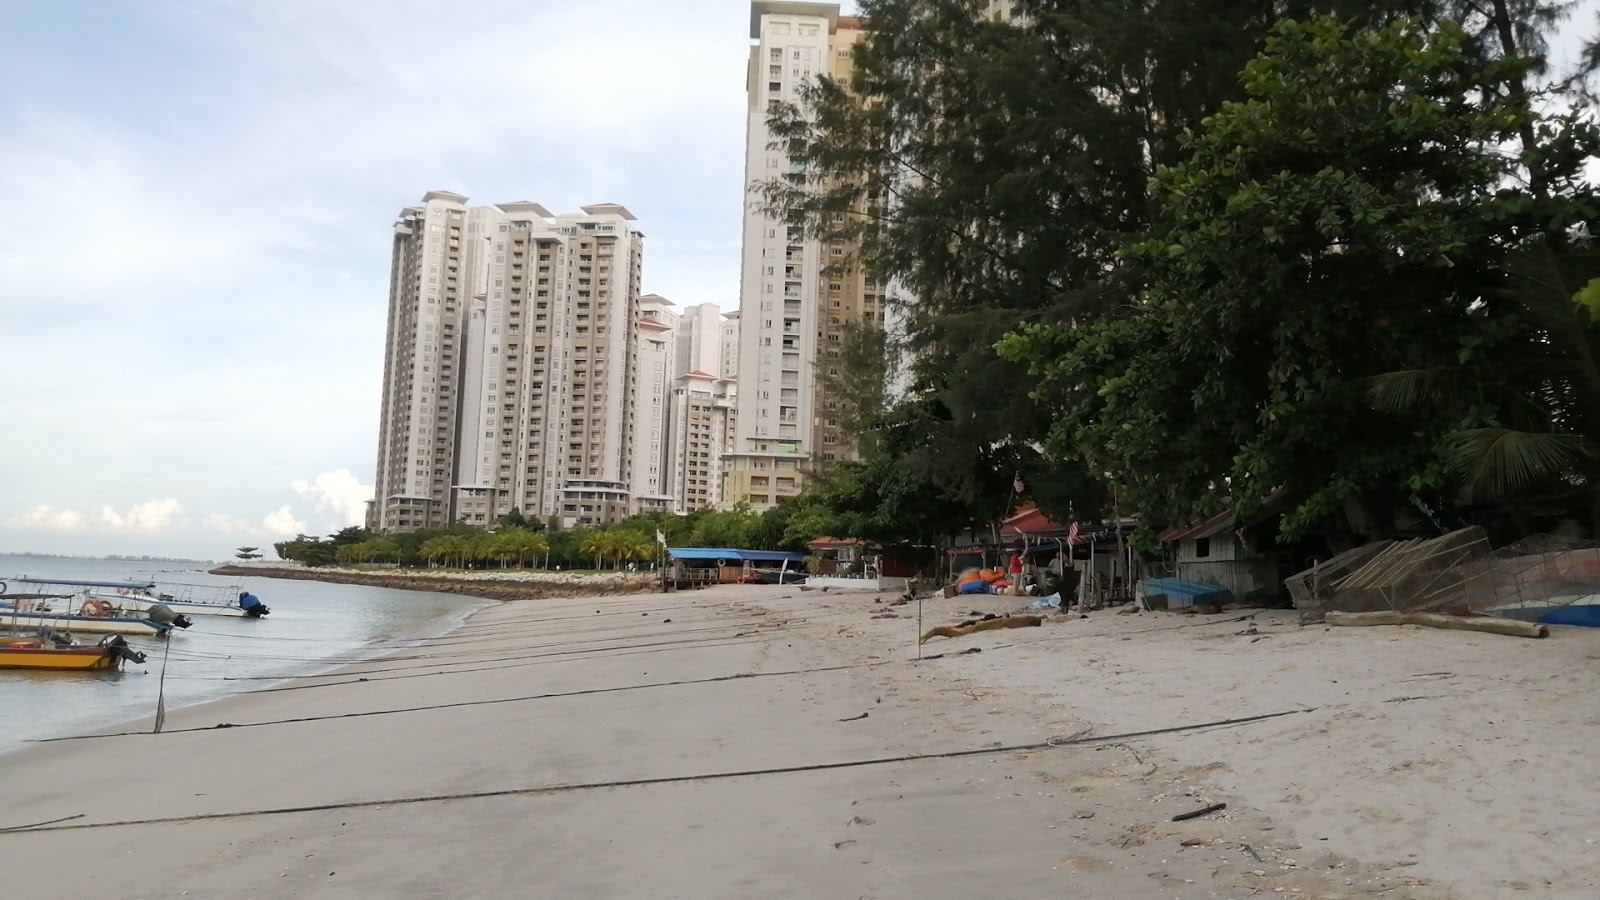 Tanjung Tokong Beach的照片 具有非常干净级别的清洁度